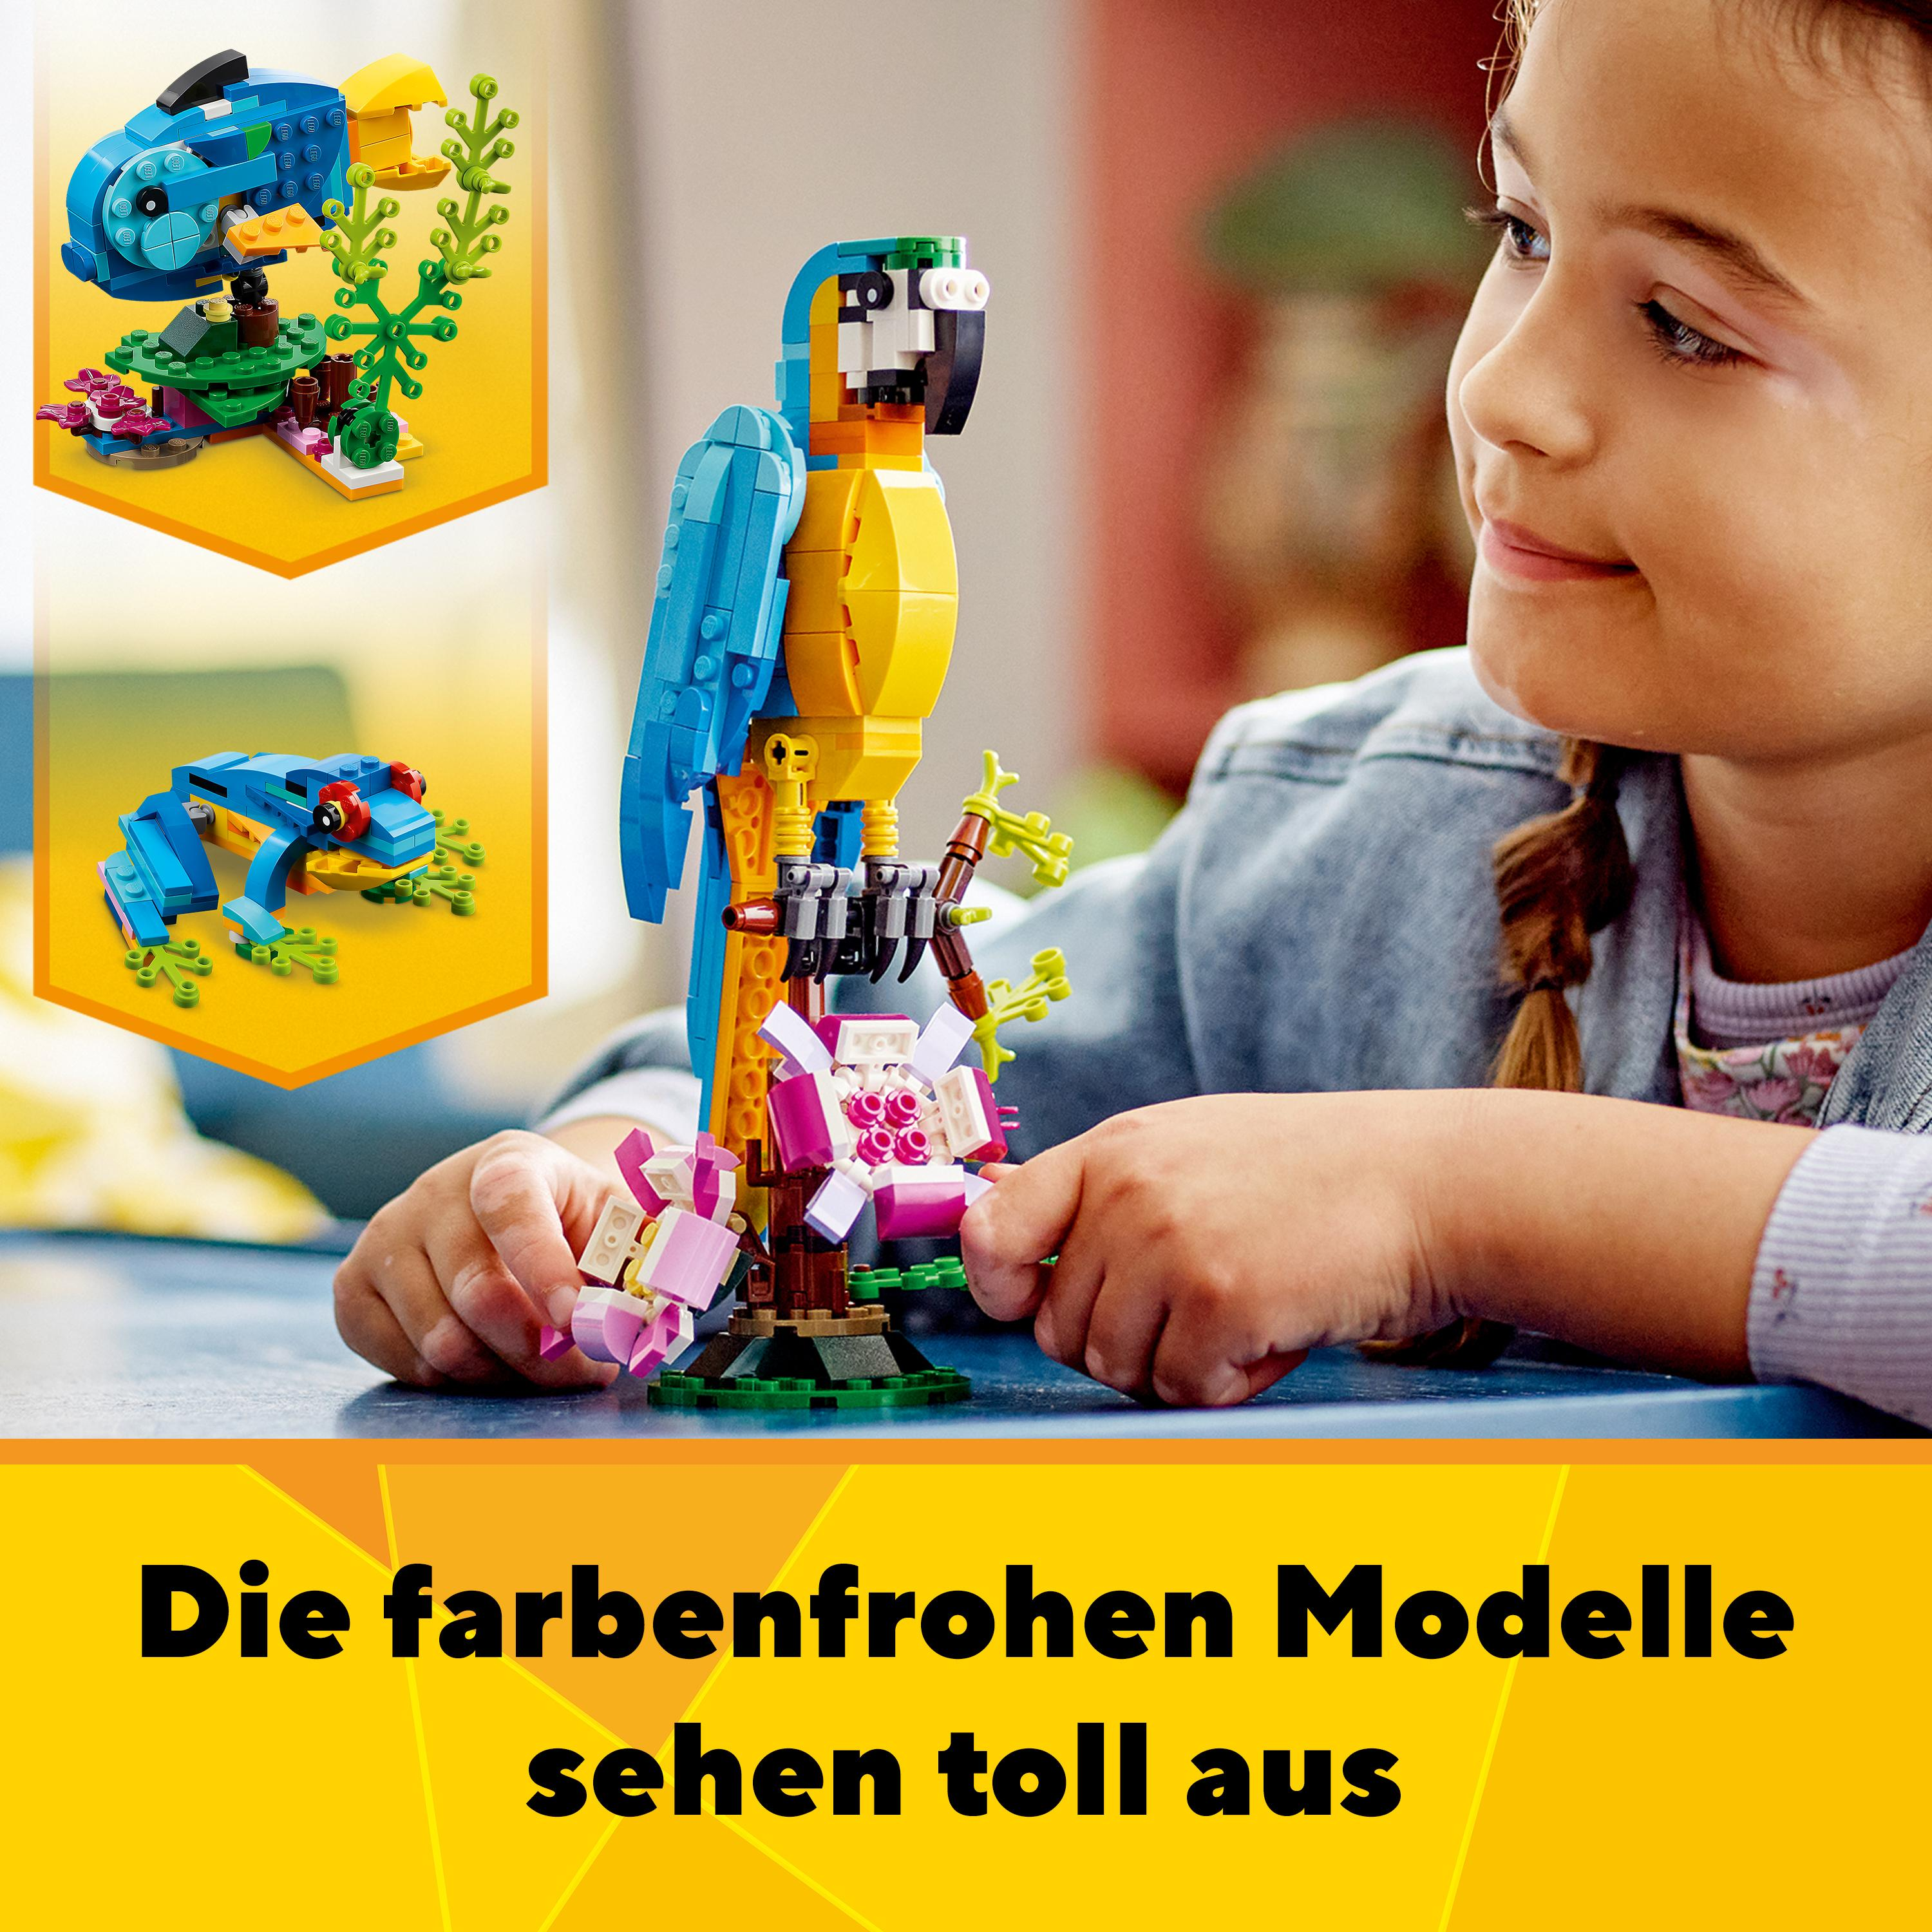 31136 LEGO Creator Mehrfarbig Bausatz, Papagei Exotischer